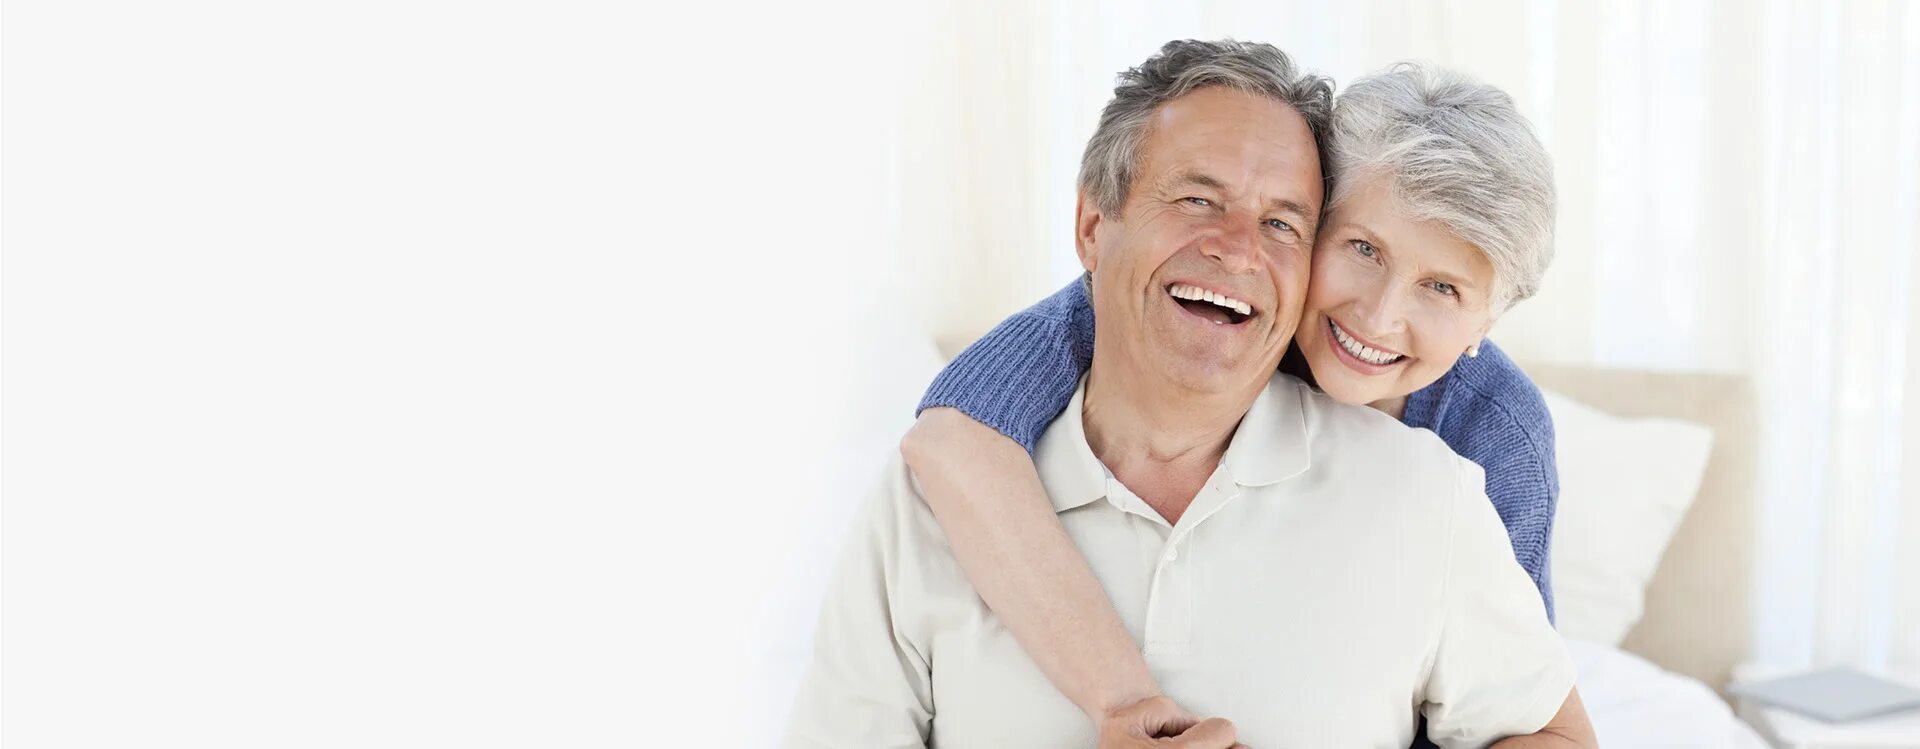 Протез пенсионеру. Стоматология пенсионеры. Пожилые люди стоматология. Красивые улыбки пожилых людей.